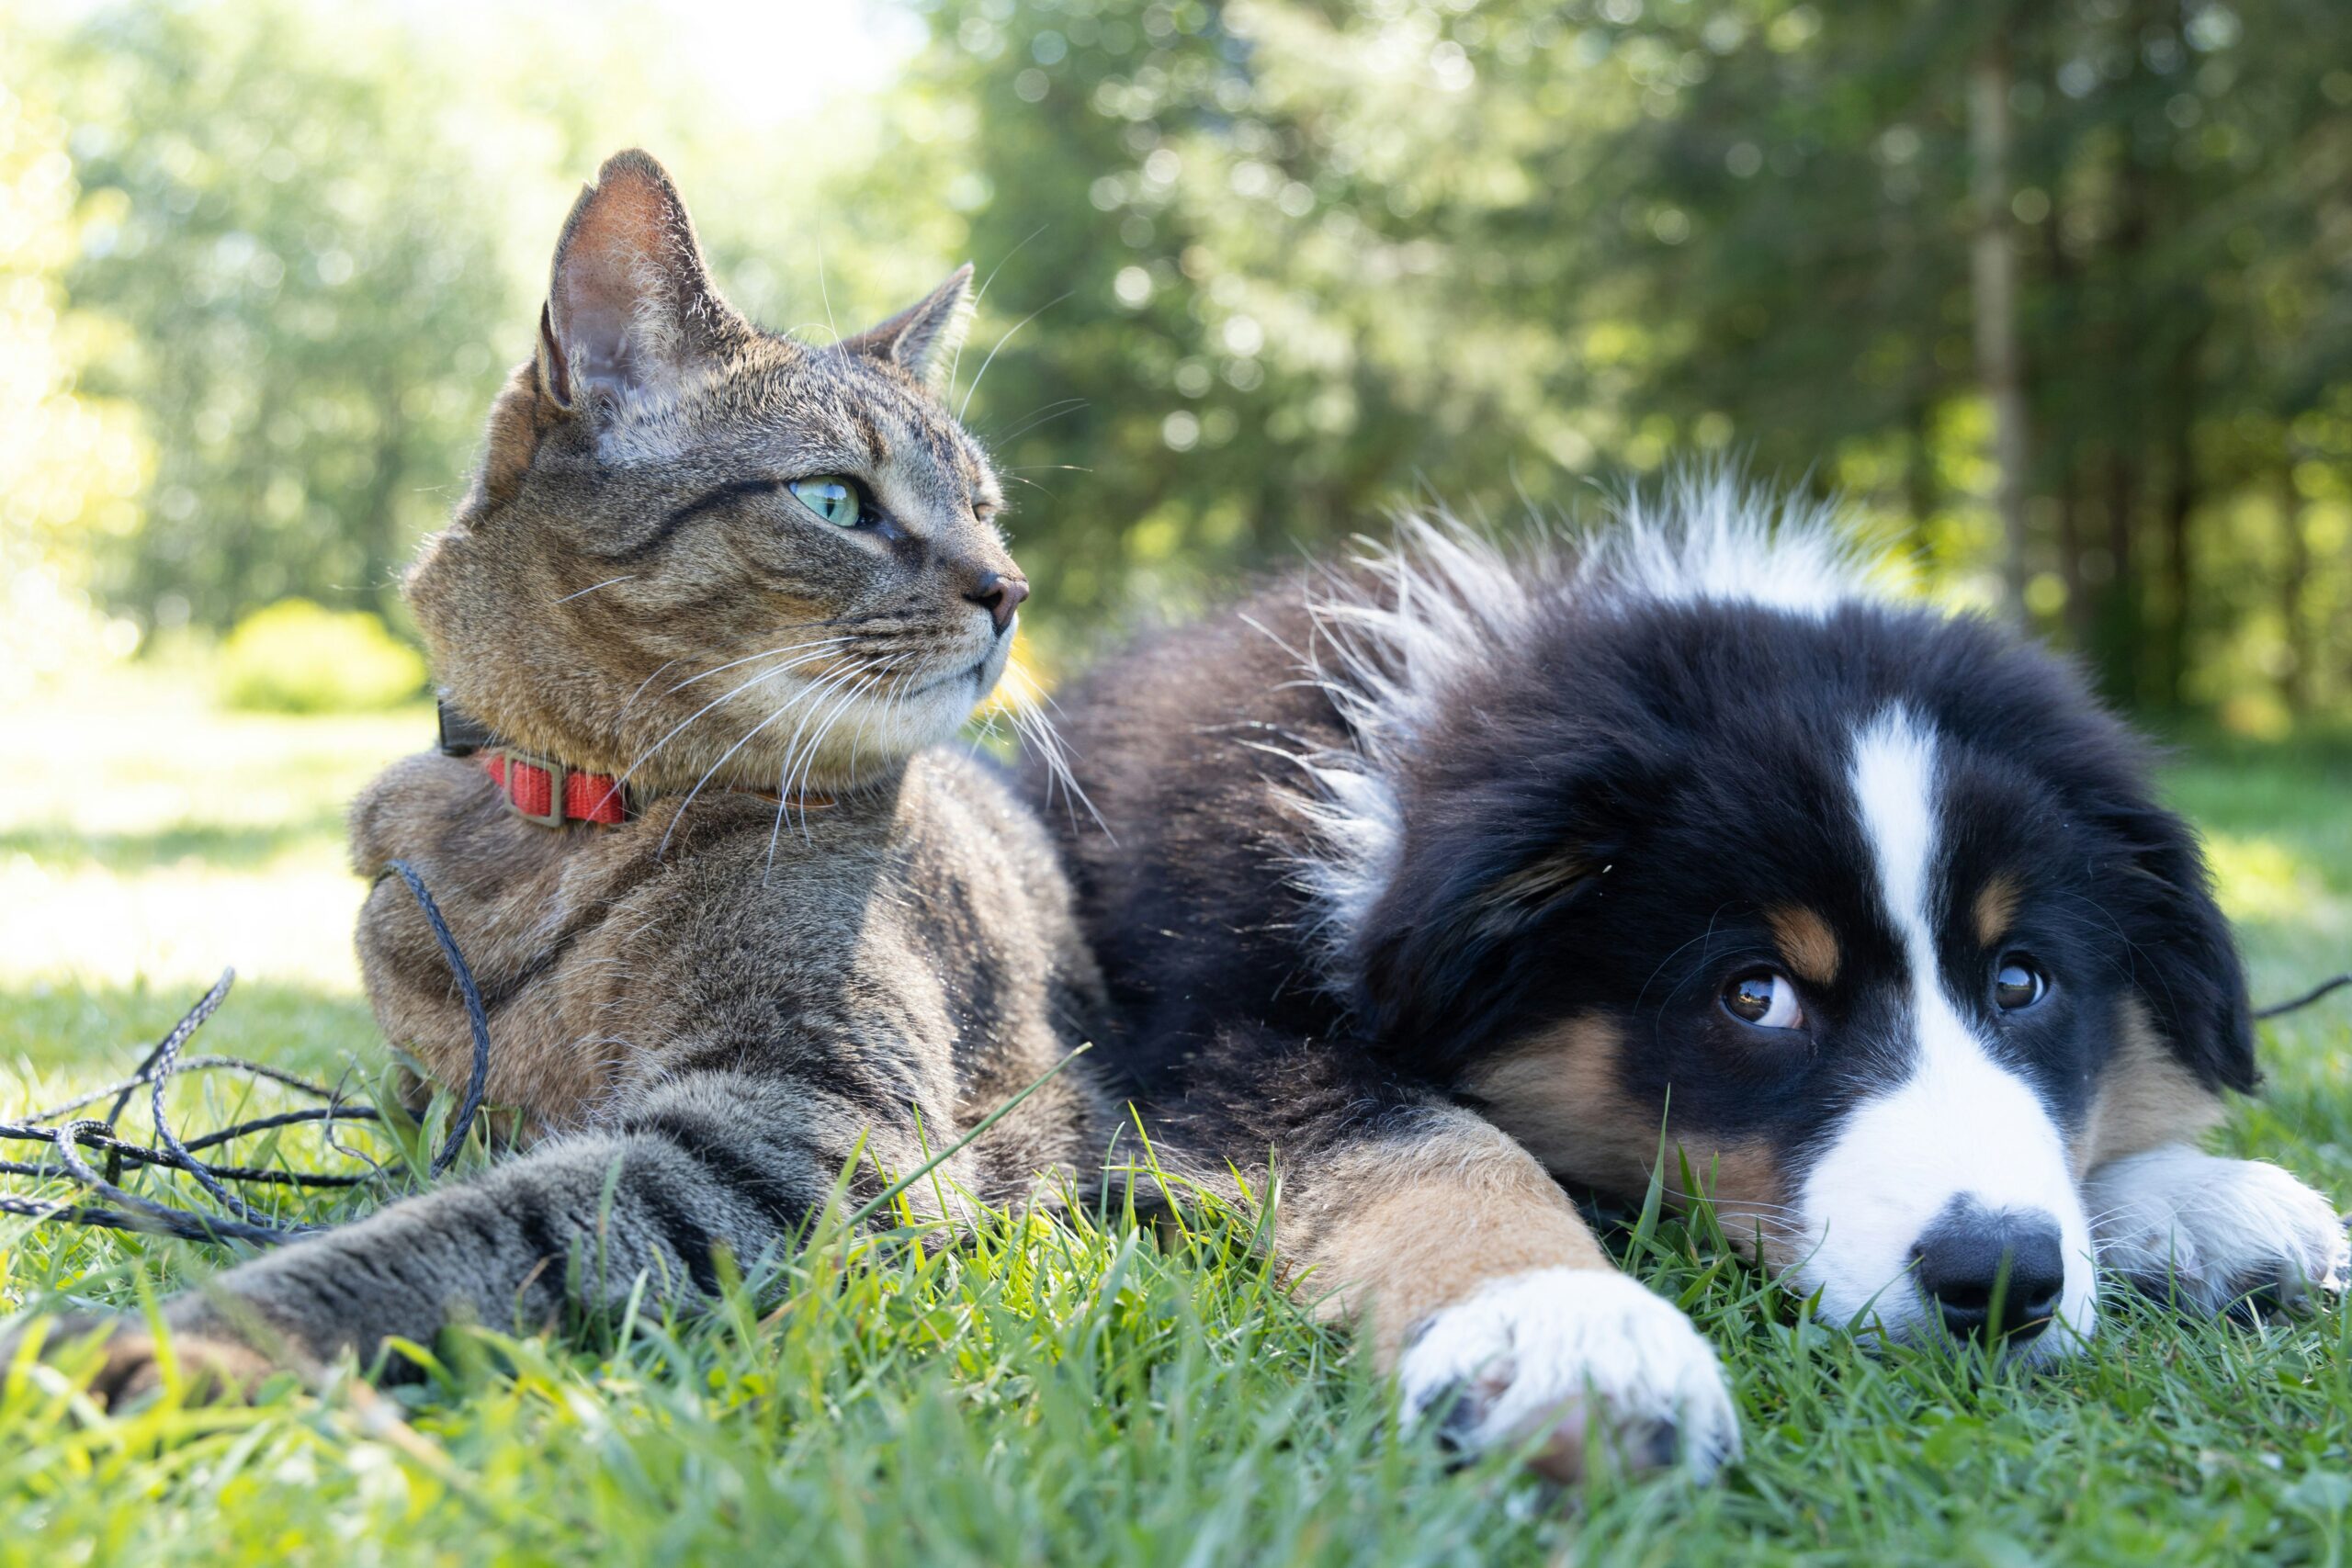 "Eternal Pets" busca ofrecer un último adiós digno a las mascotas amadas